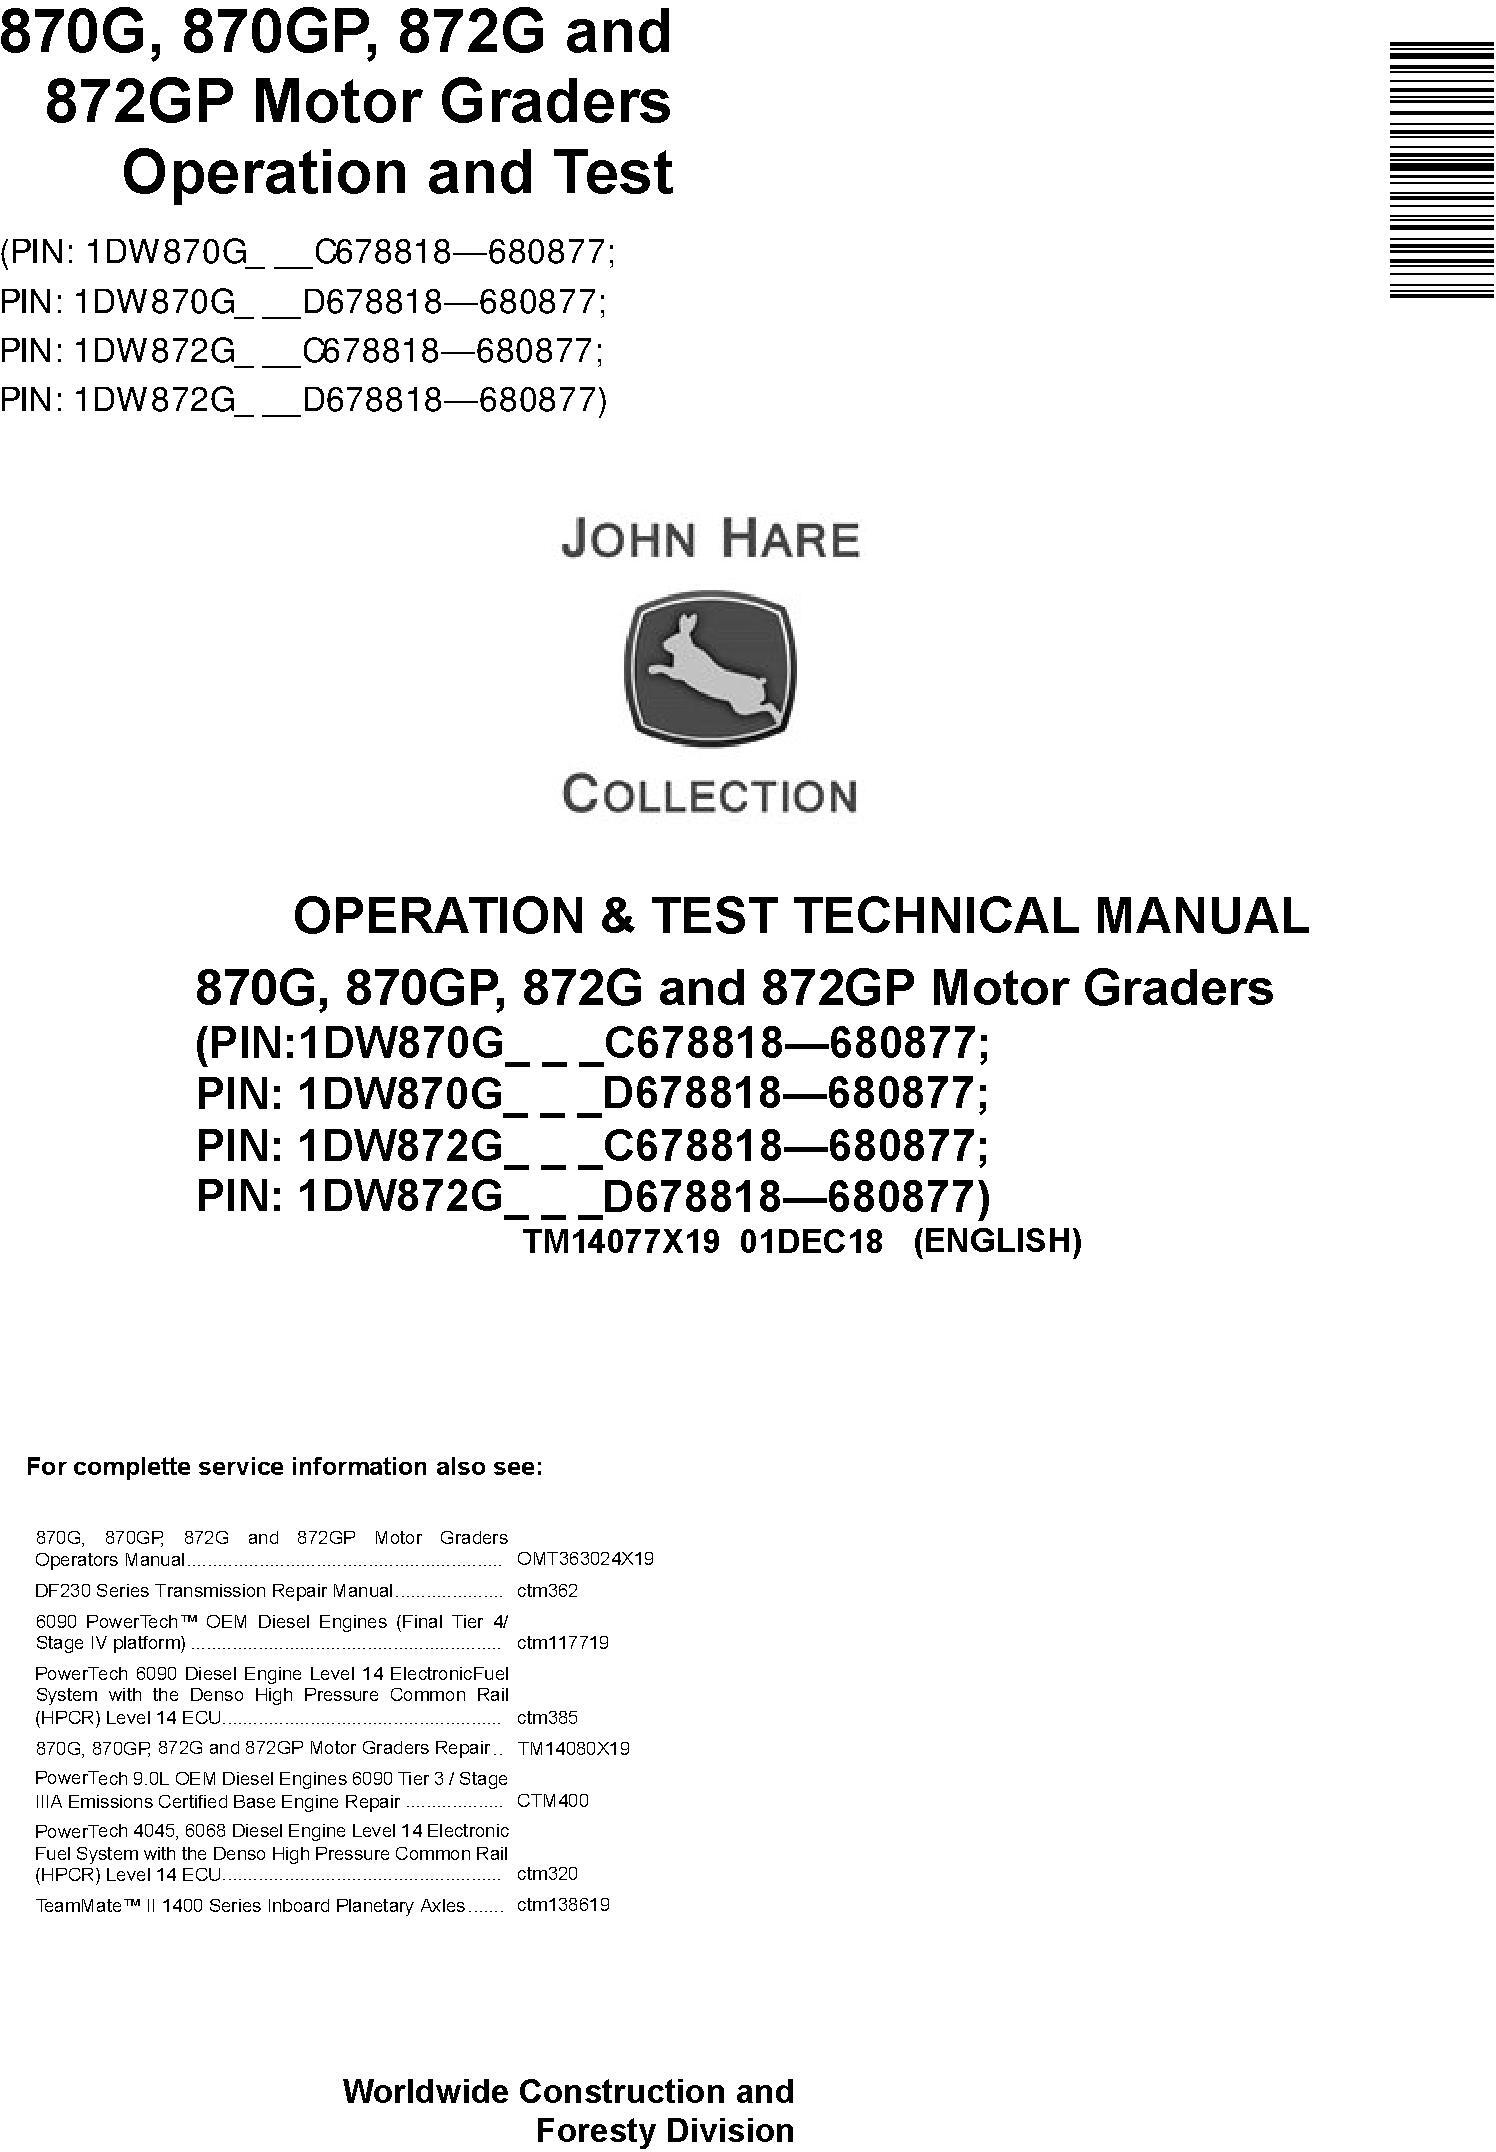 John Deere 870G, 870GP, 872G, 872GP (SN.C678818-680877) Motor Graders Diagnostic Manual (TM14077X19) - 18997